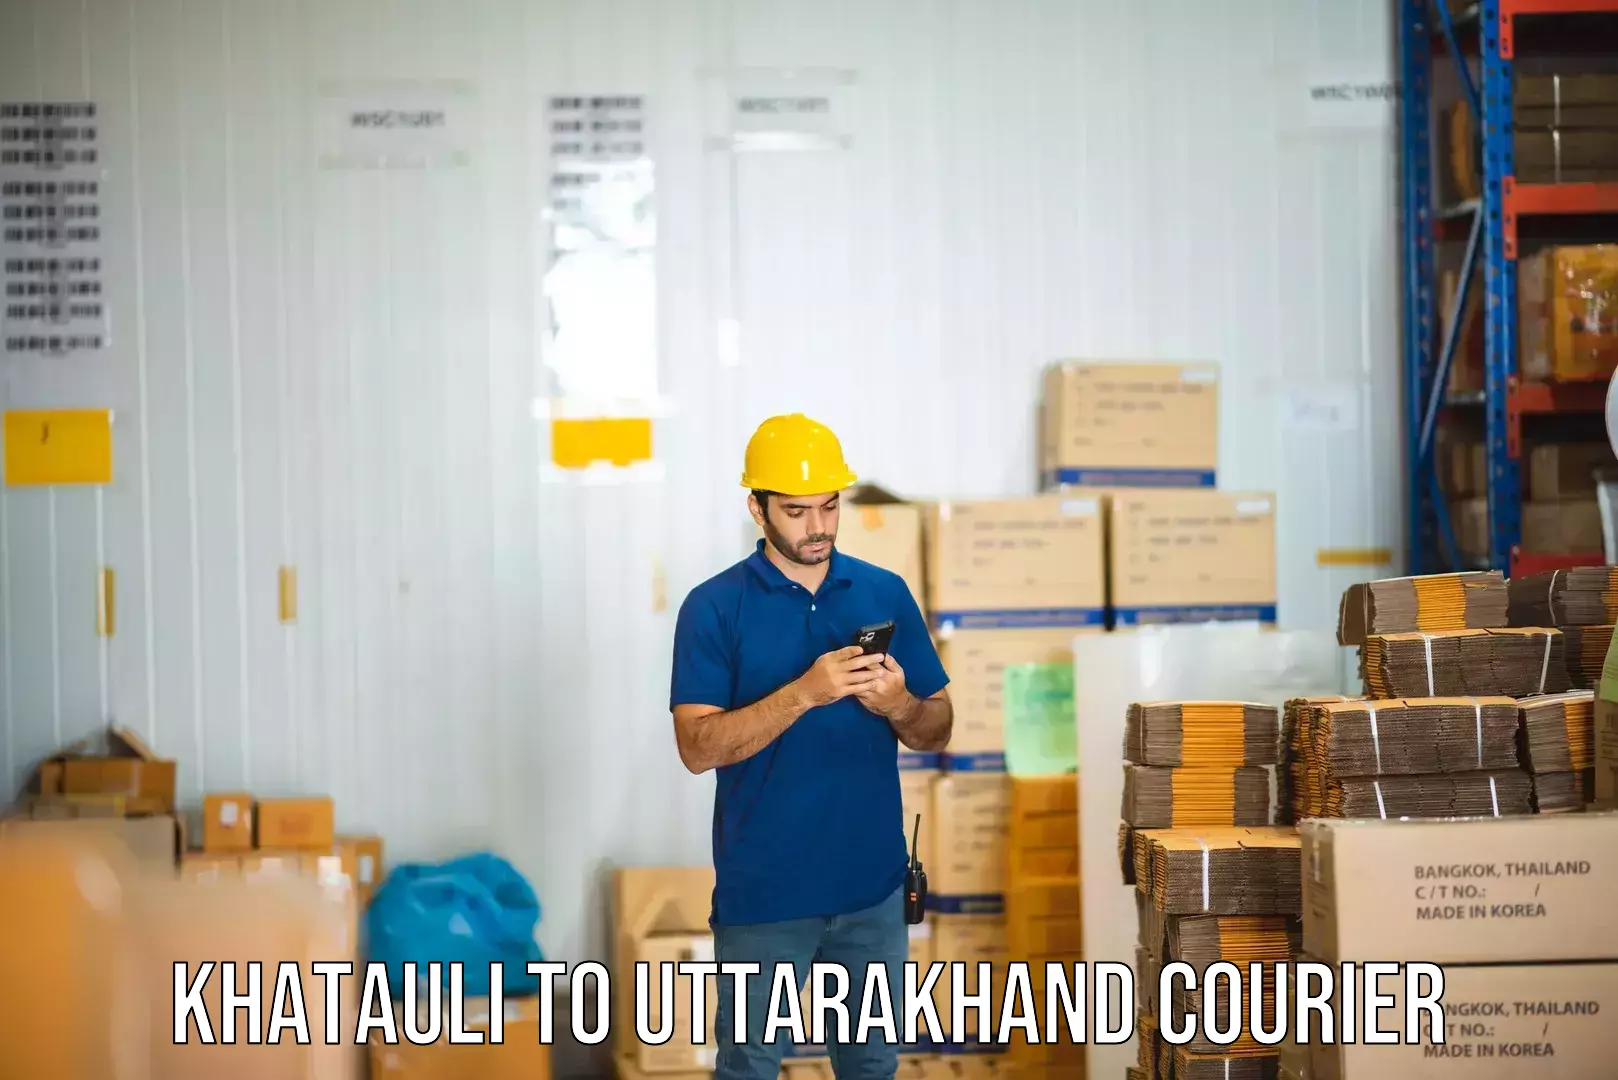 Innovative shipping solutions Khatauli to Uttarakhand